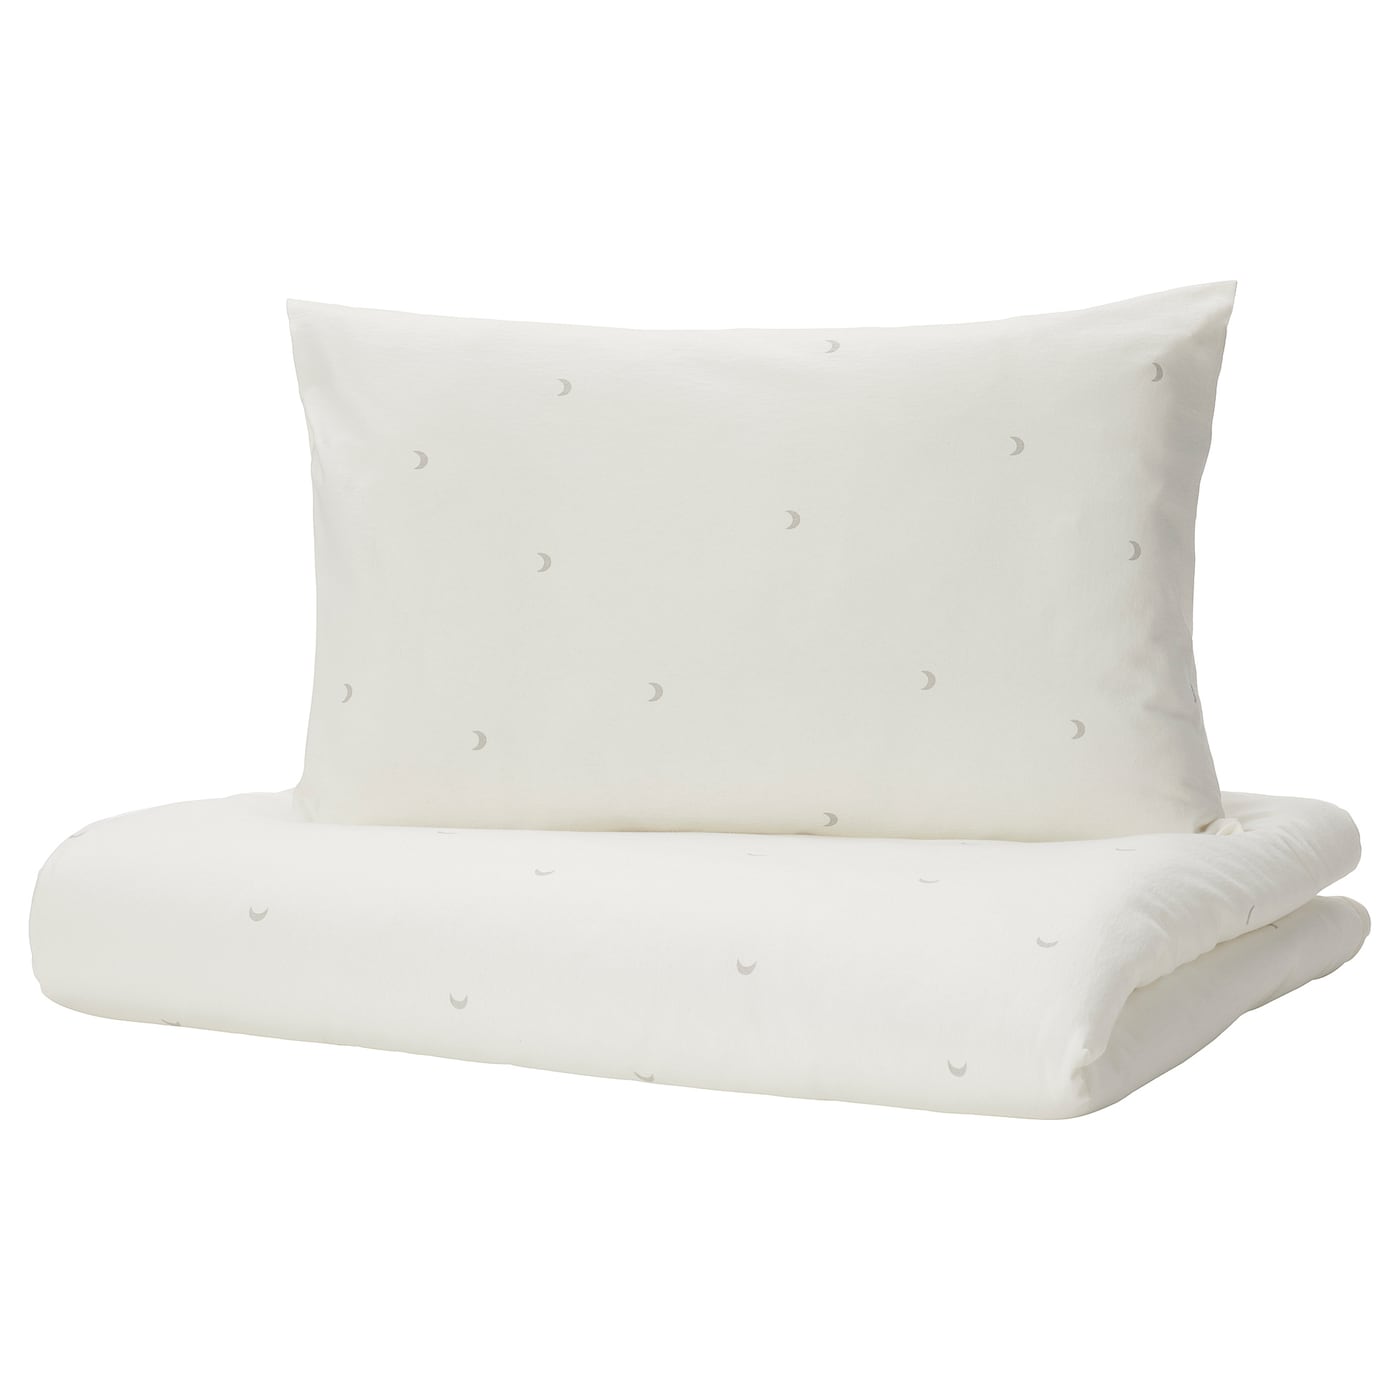 Пододеяльник и 1 наволочка для детской кроватки -  LENAST IKEA/ ЛЕНСАТ ИКЕА, 110x125/35x55 см, белый